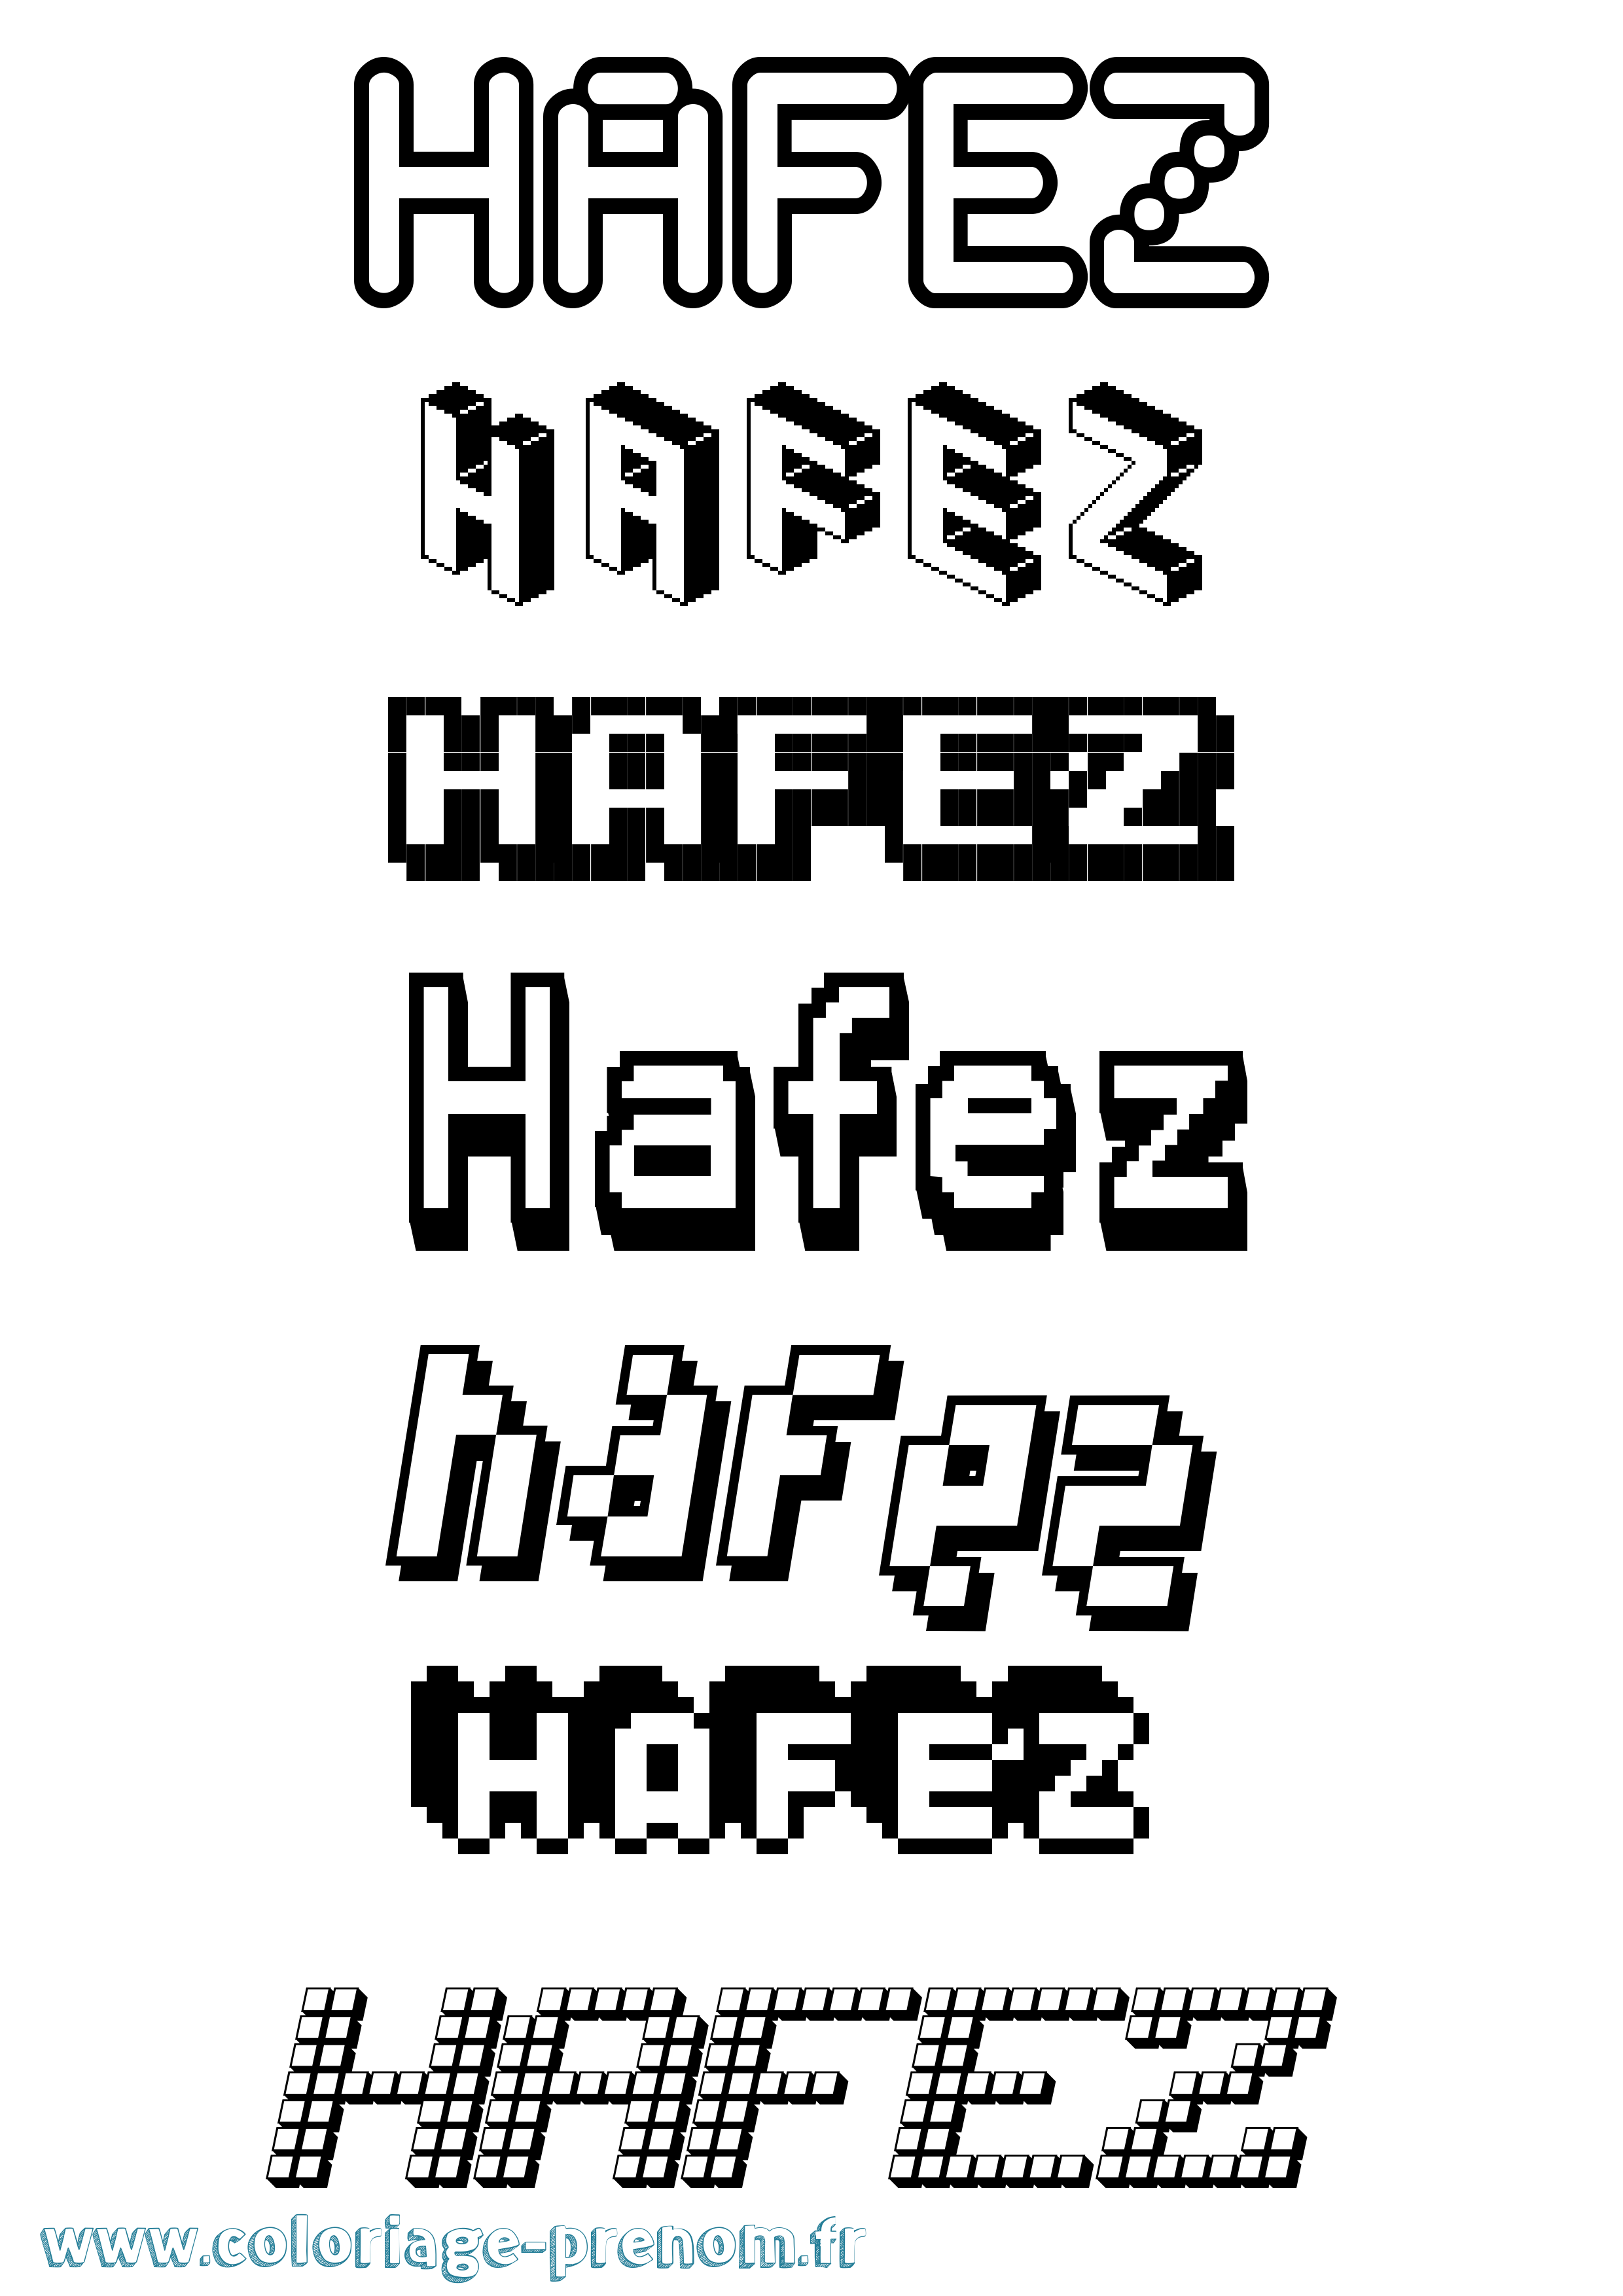 Coloriage prénom Hafez Pixel